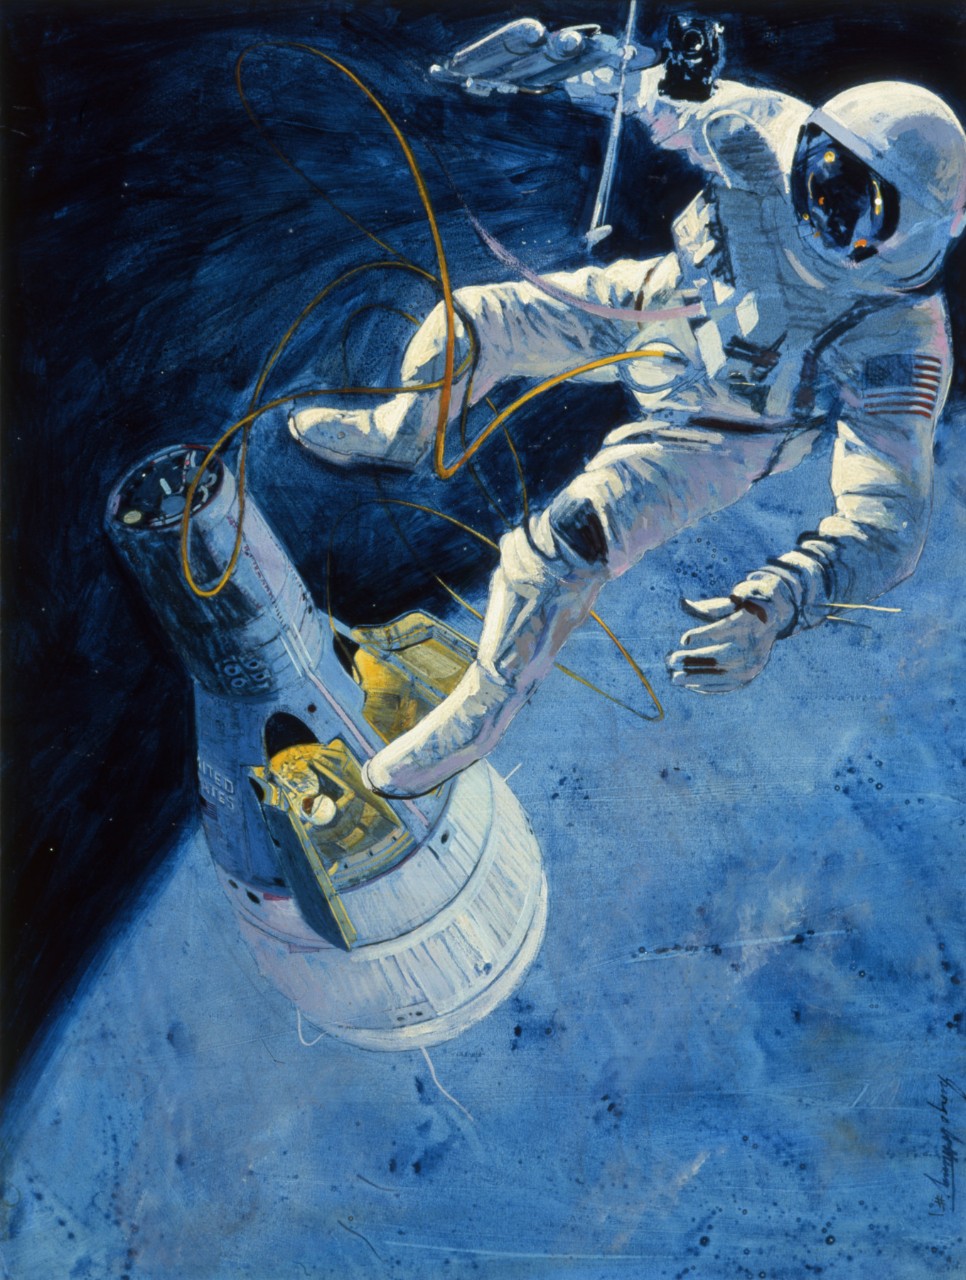 Gemini IV, Astronaut Edward White: 88-162-UK